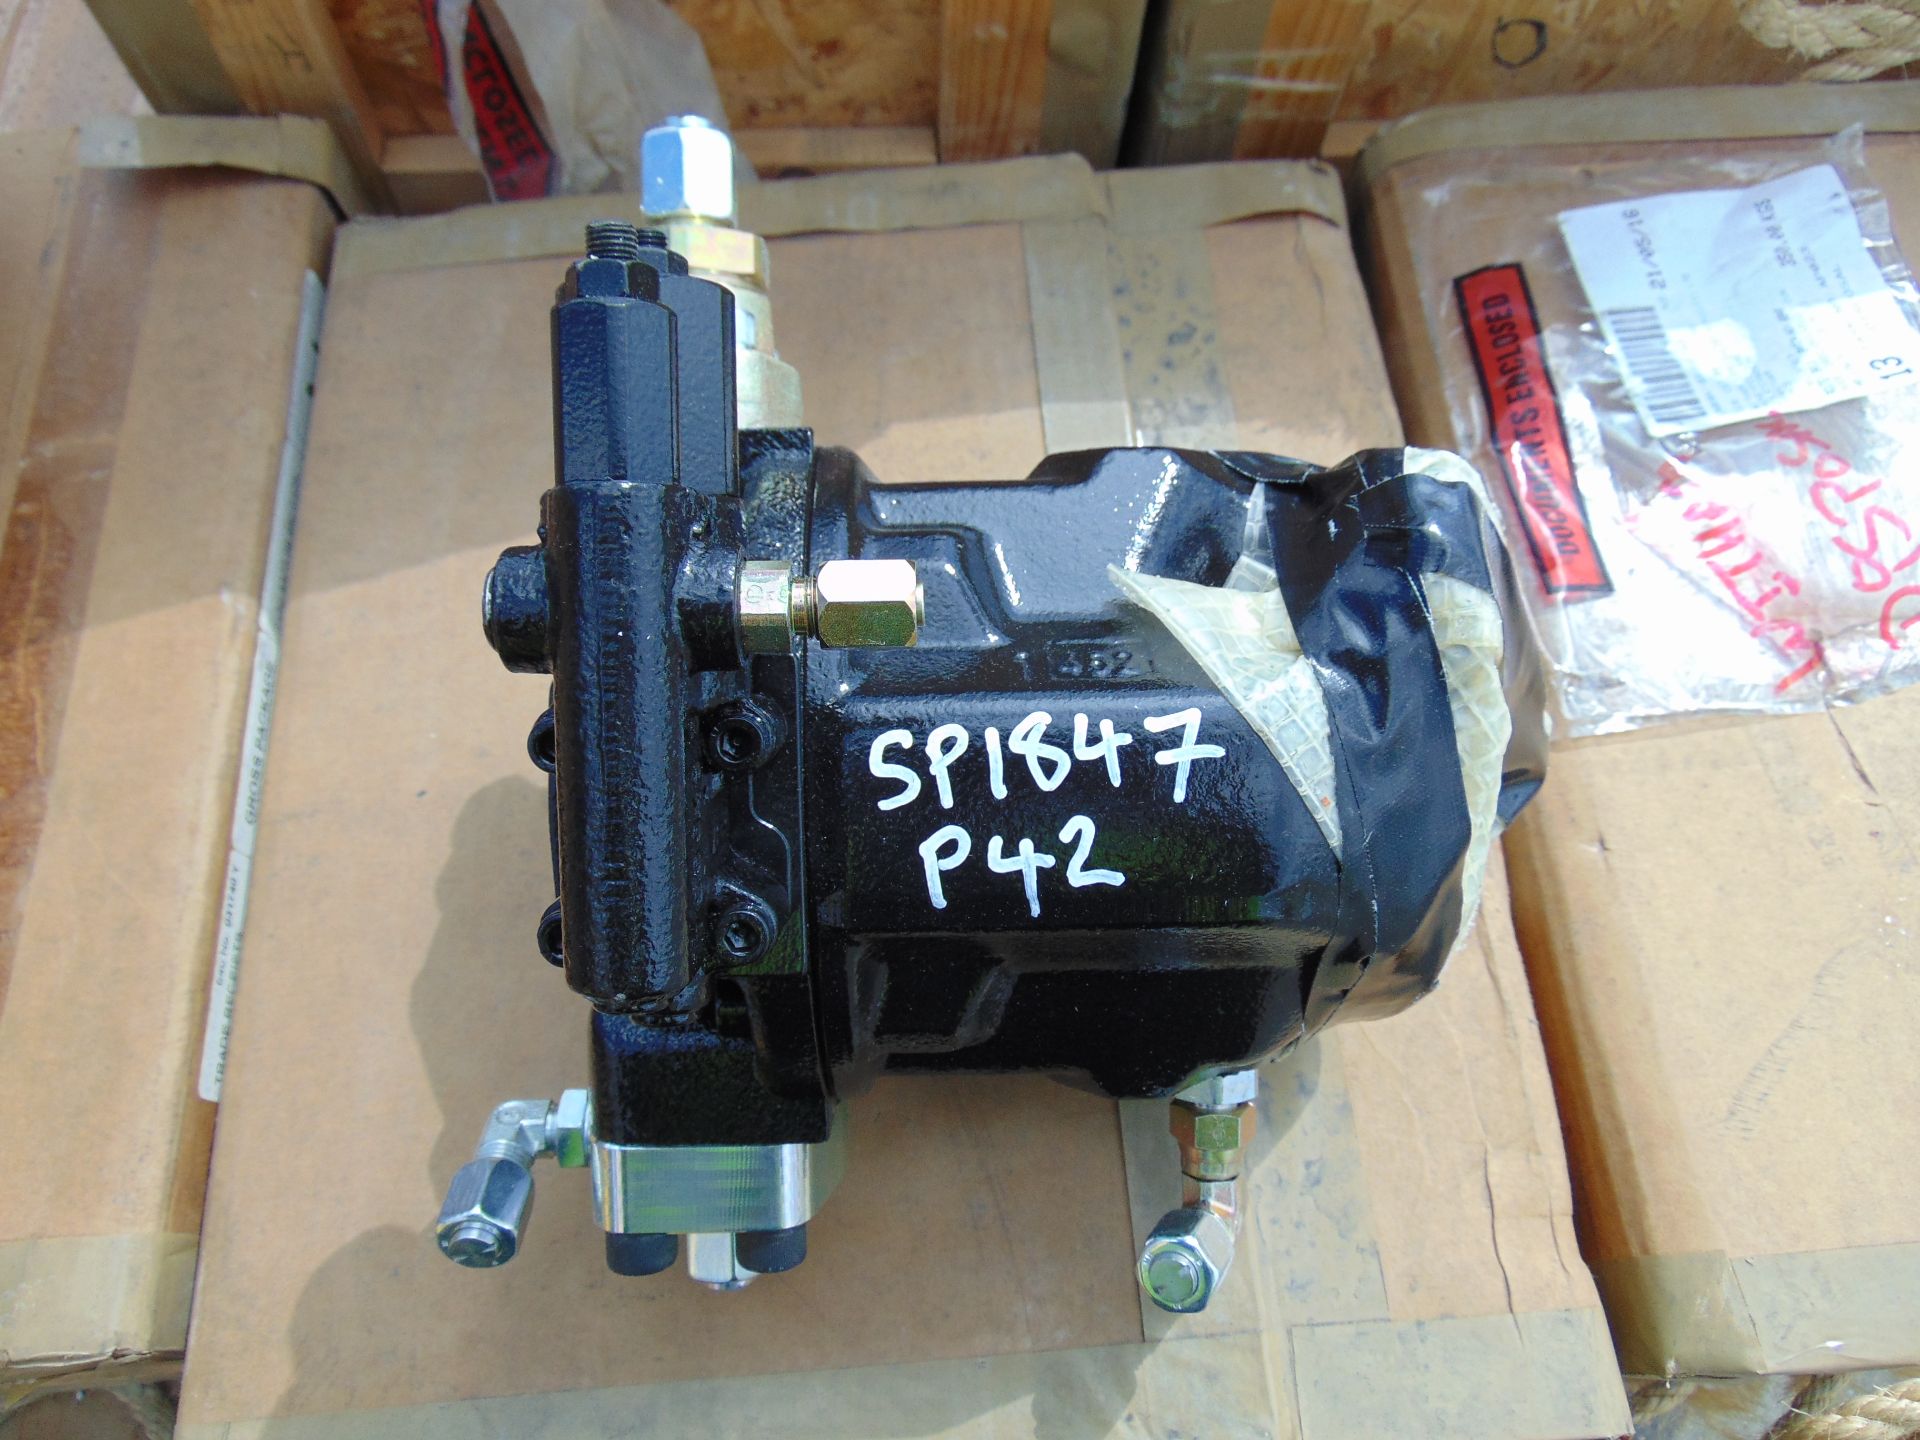 2 x Rexroth Hydraulic Pump P/No 2 0066-196